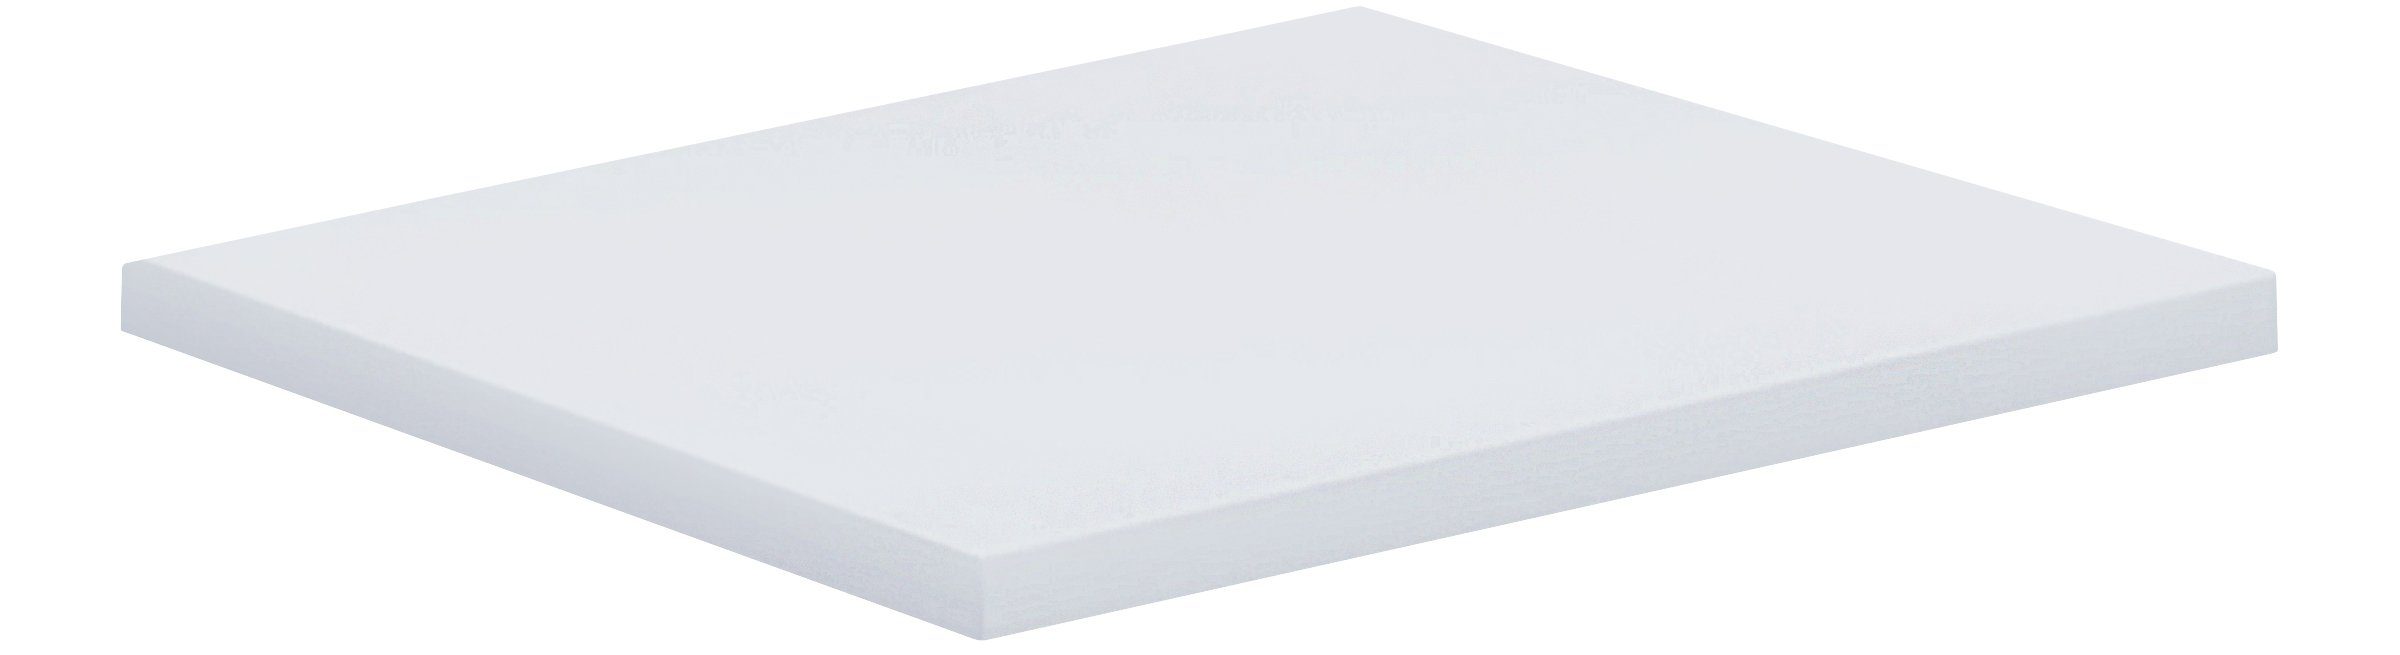 VCM Schreibtisch Eckplatte Schreibtisch Lona 50x50 Weiß